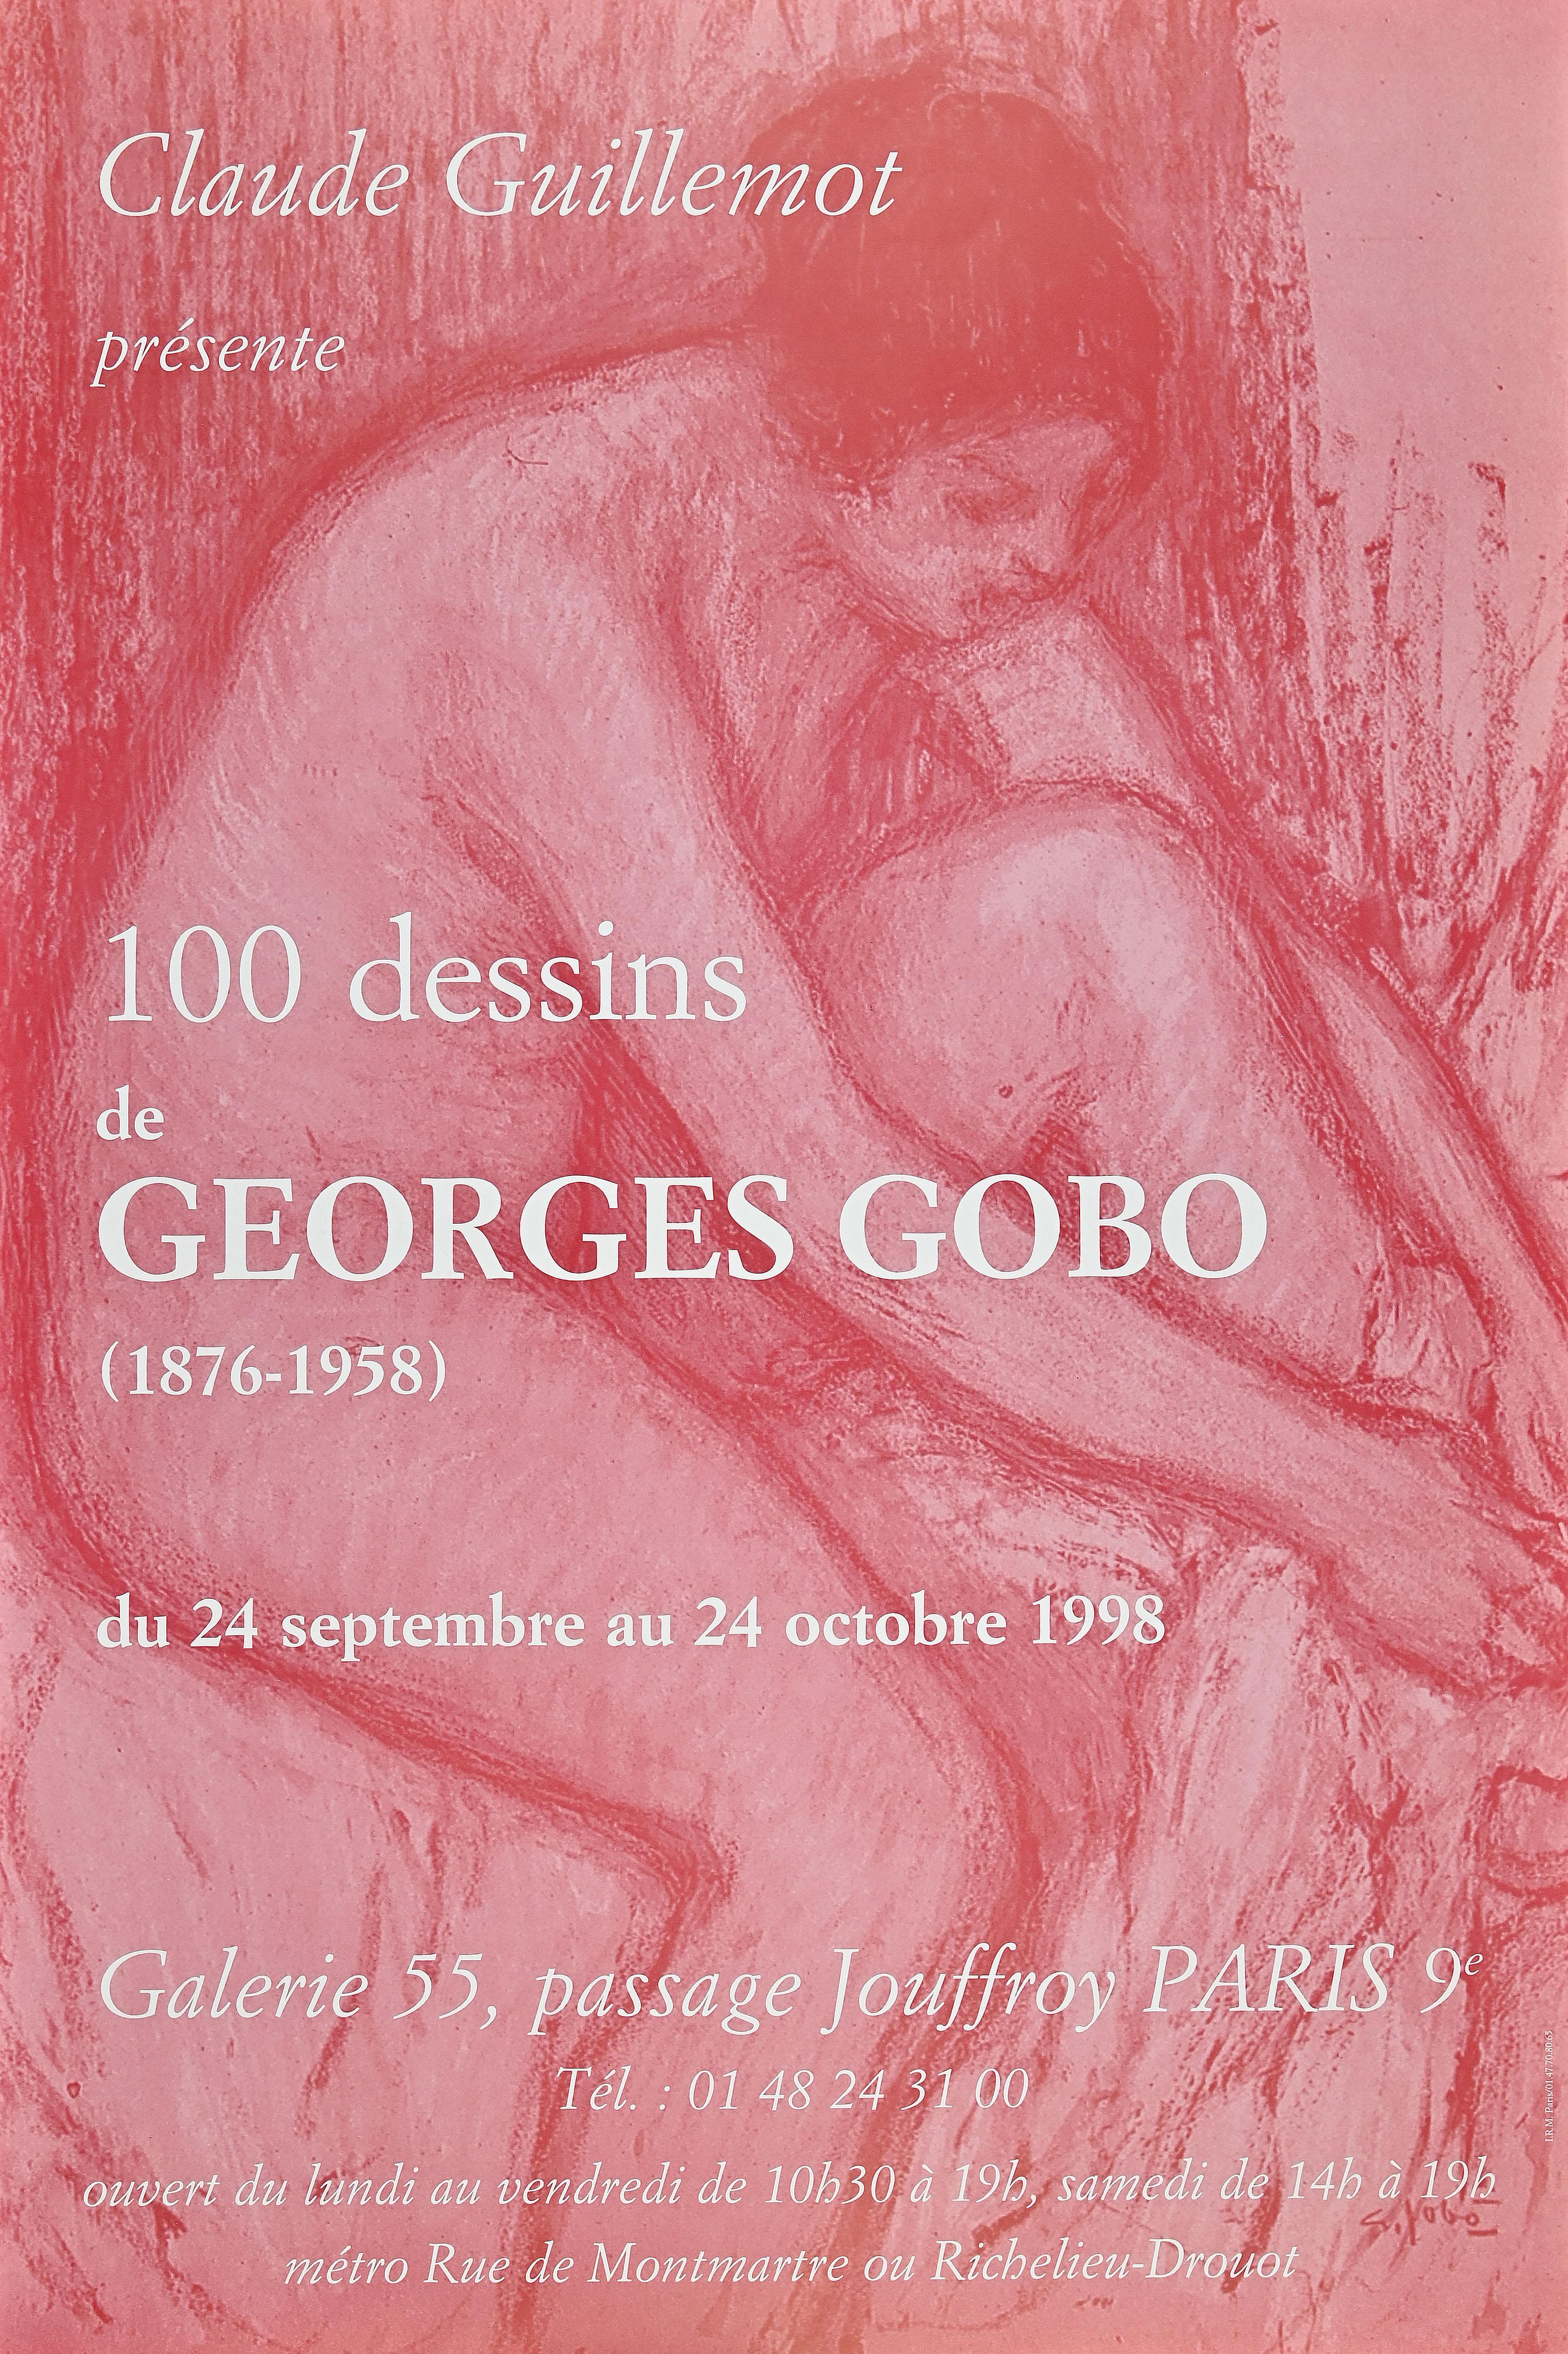 Affiche rétro de l'exposition Georges Gobo, 1998